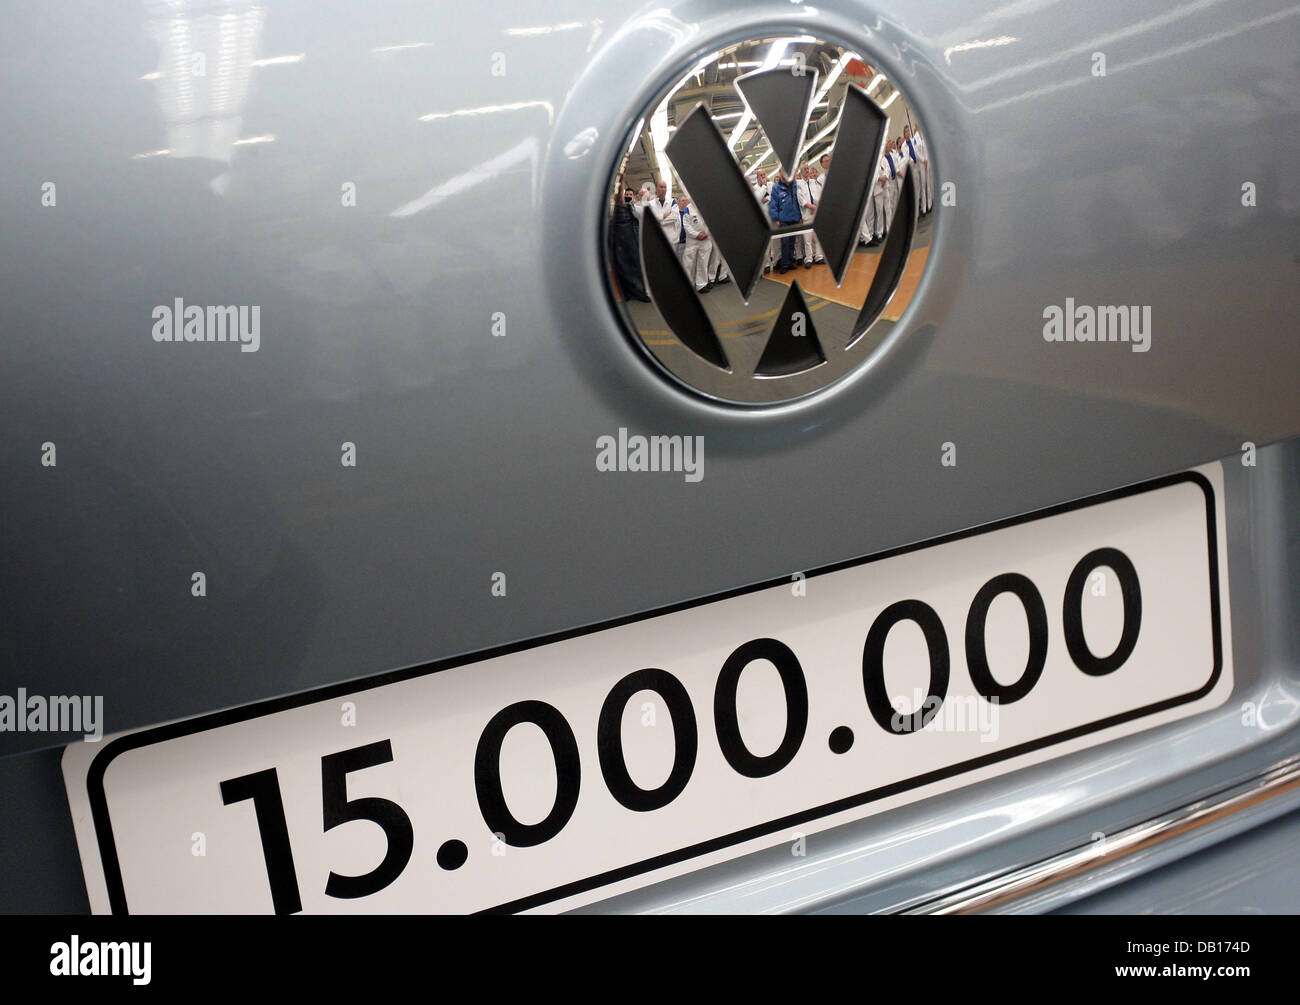 Das Bild zeigt das Kennzeichen des 15-millionste VW Passat in der Automobil-Hersteller Fabrik in Emden, Deutschland, 9. November 2007. Mitarbeiter nehmen auch die Zeremonie feiern die Passat-Produktion-Serie, die vor 34 Jahren begann. Das Jubiläumsmodell ist eine Arctic Blue Silver Version mit umweltfreundlicher BlueMotion-Technologie. VW spendete die einzigartige Passat zu den Ge Stockfoto